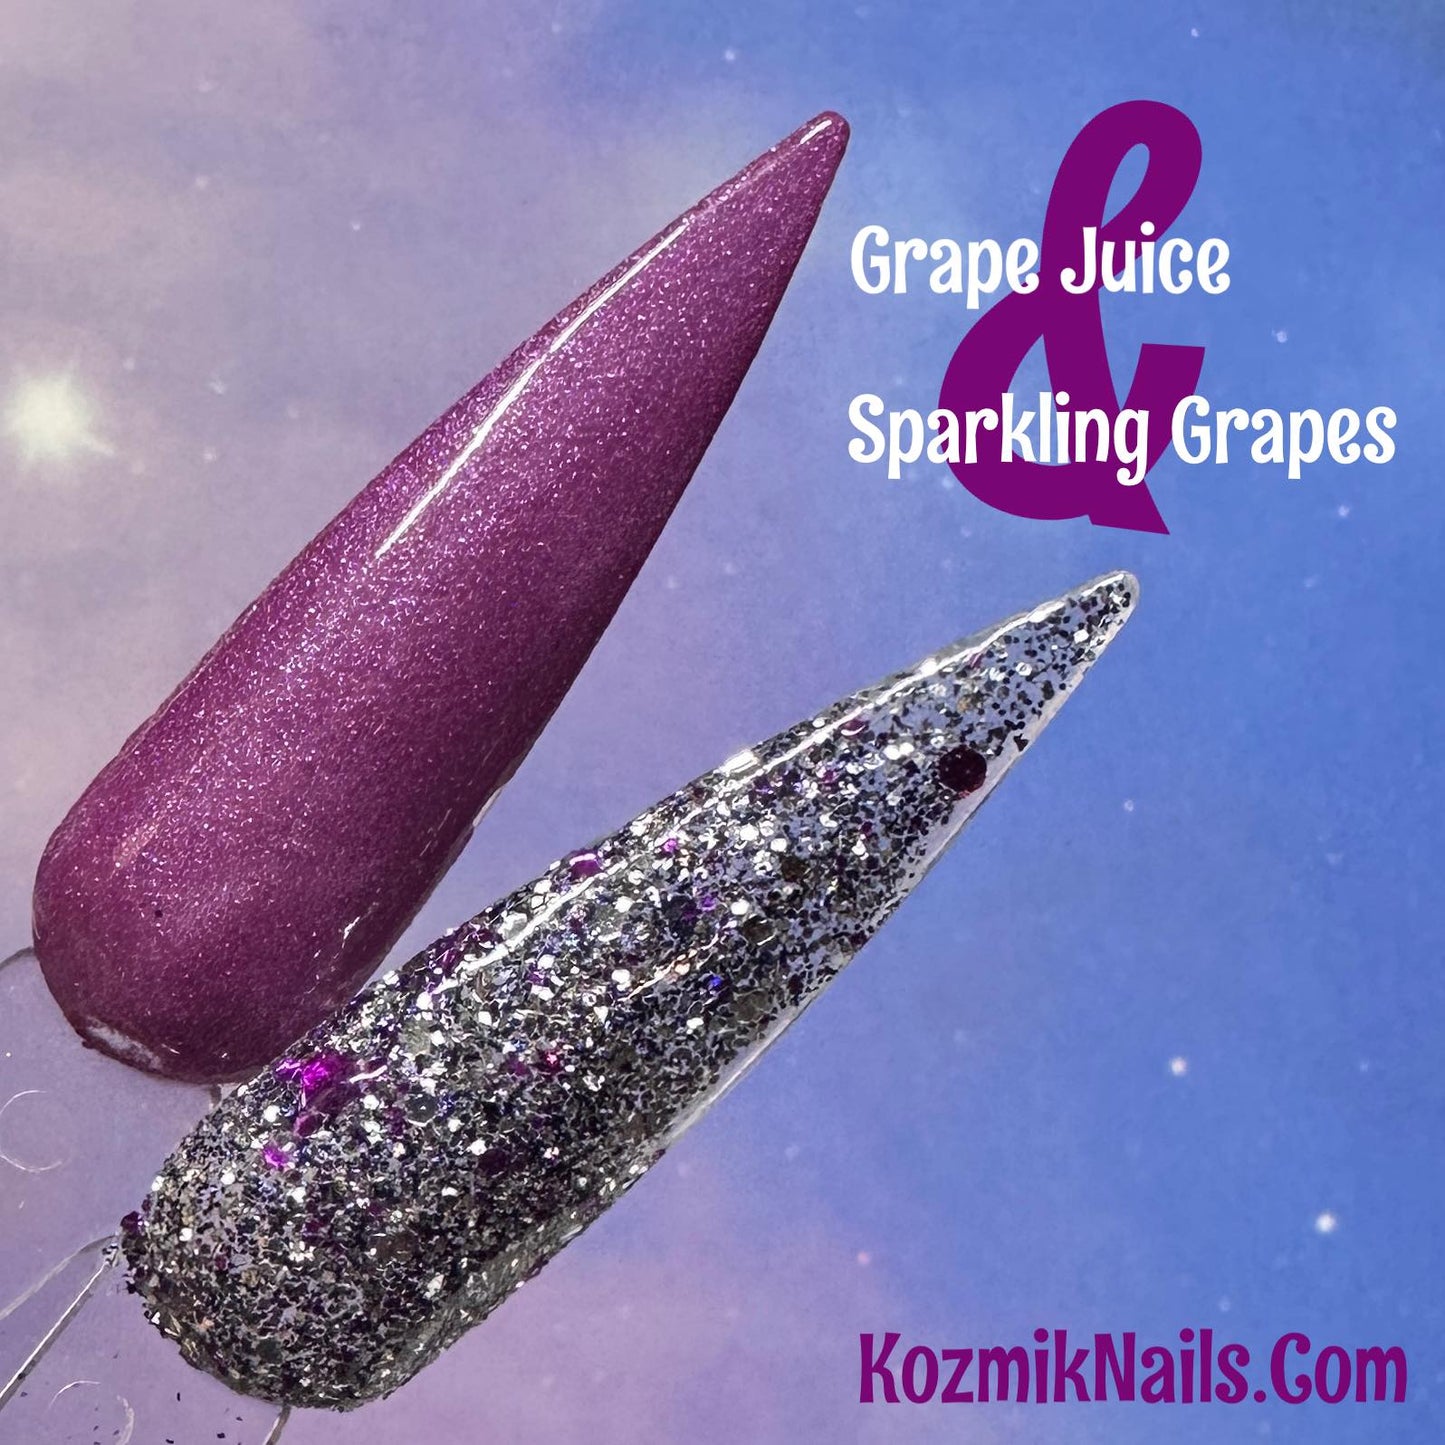 Sparkling Grapes